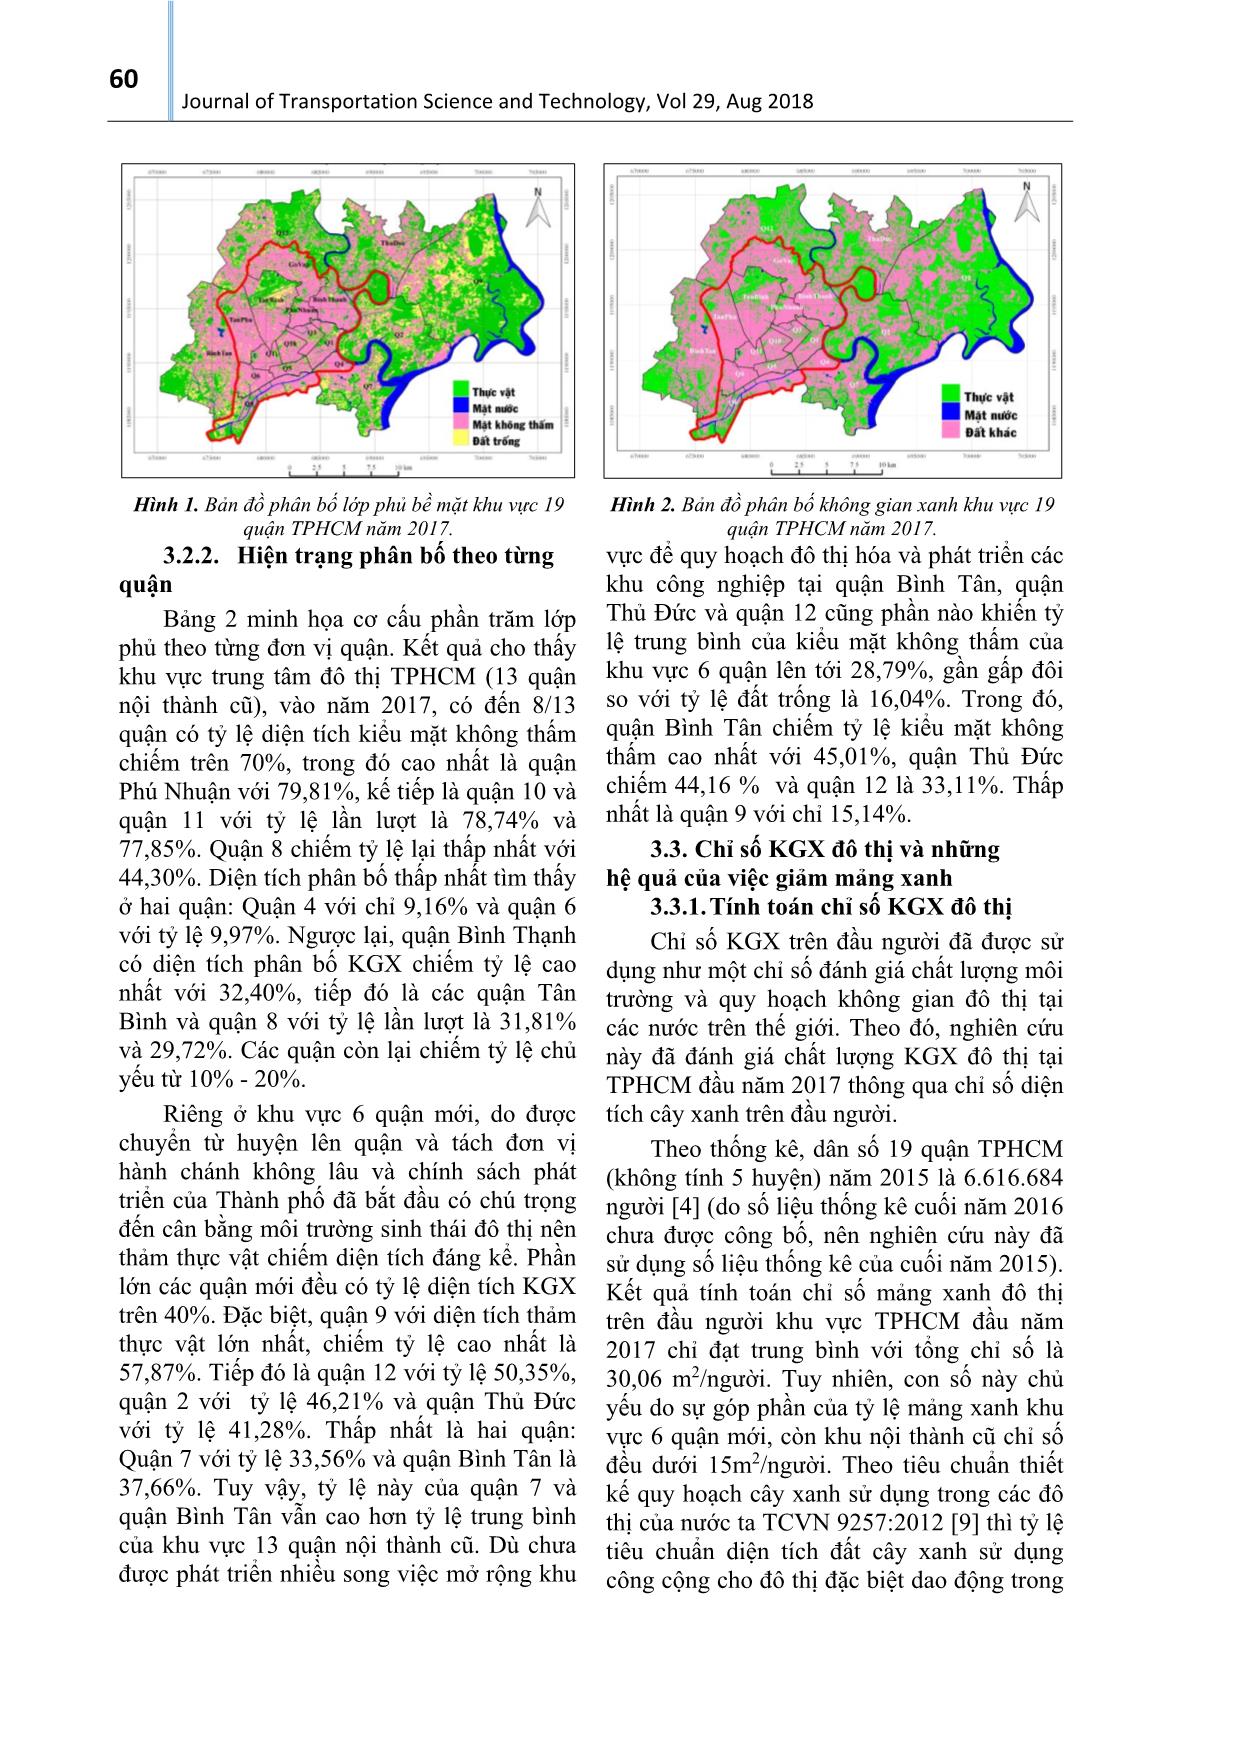 Đánh giá thực trạng không gian xanh - Thước đo chất lượng môi trường hướng đến phát triển đô thi xanh cho thành phố Hồ Chí Minh trang 5